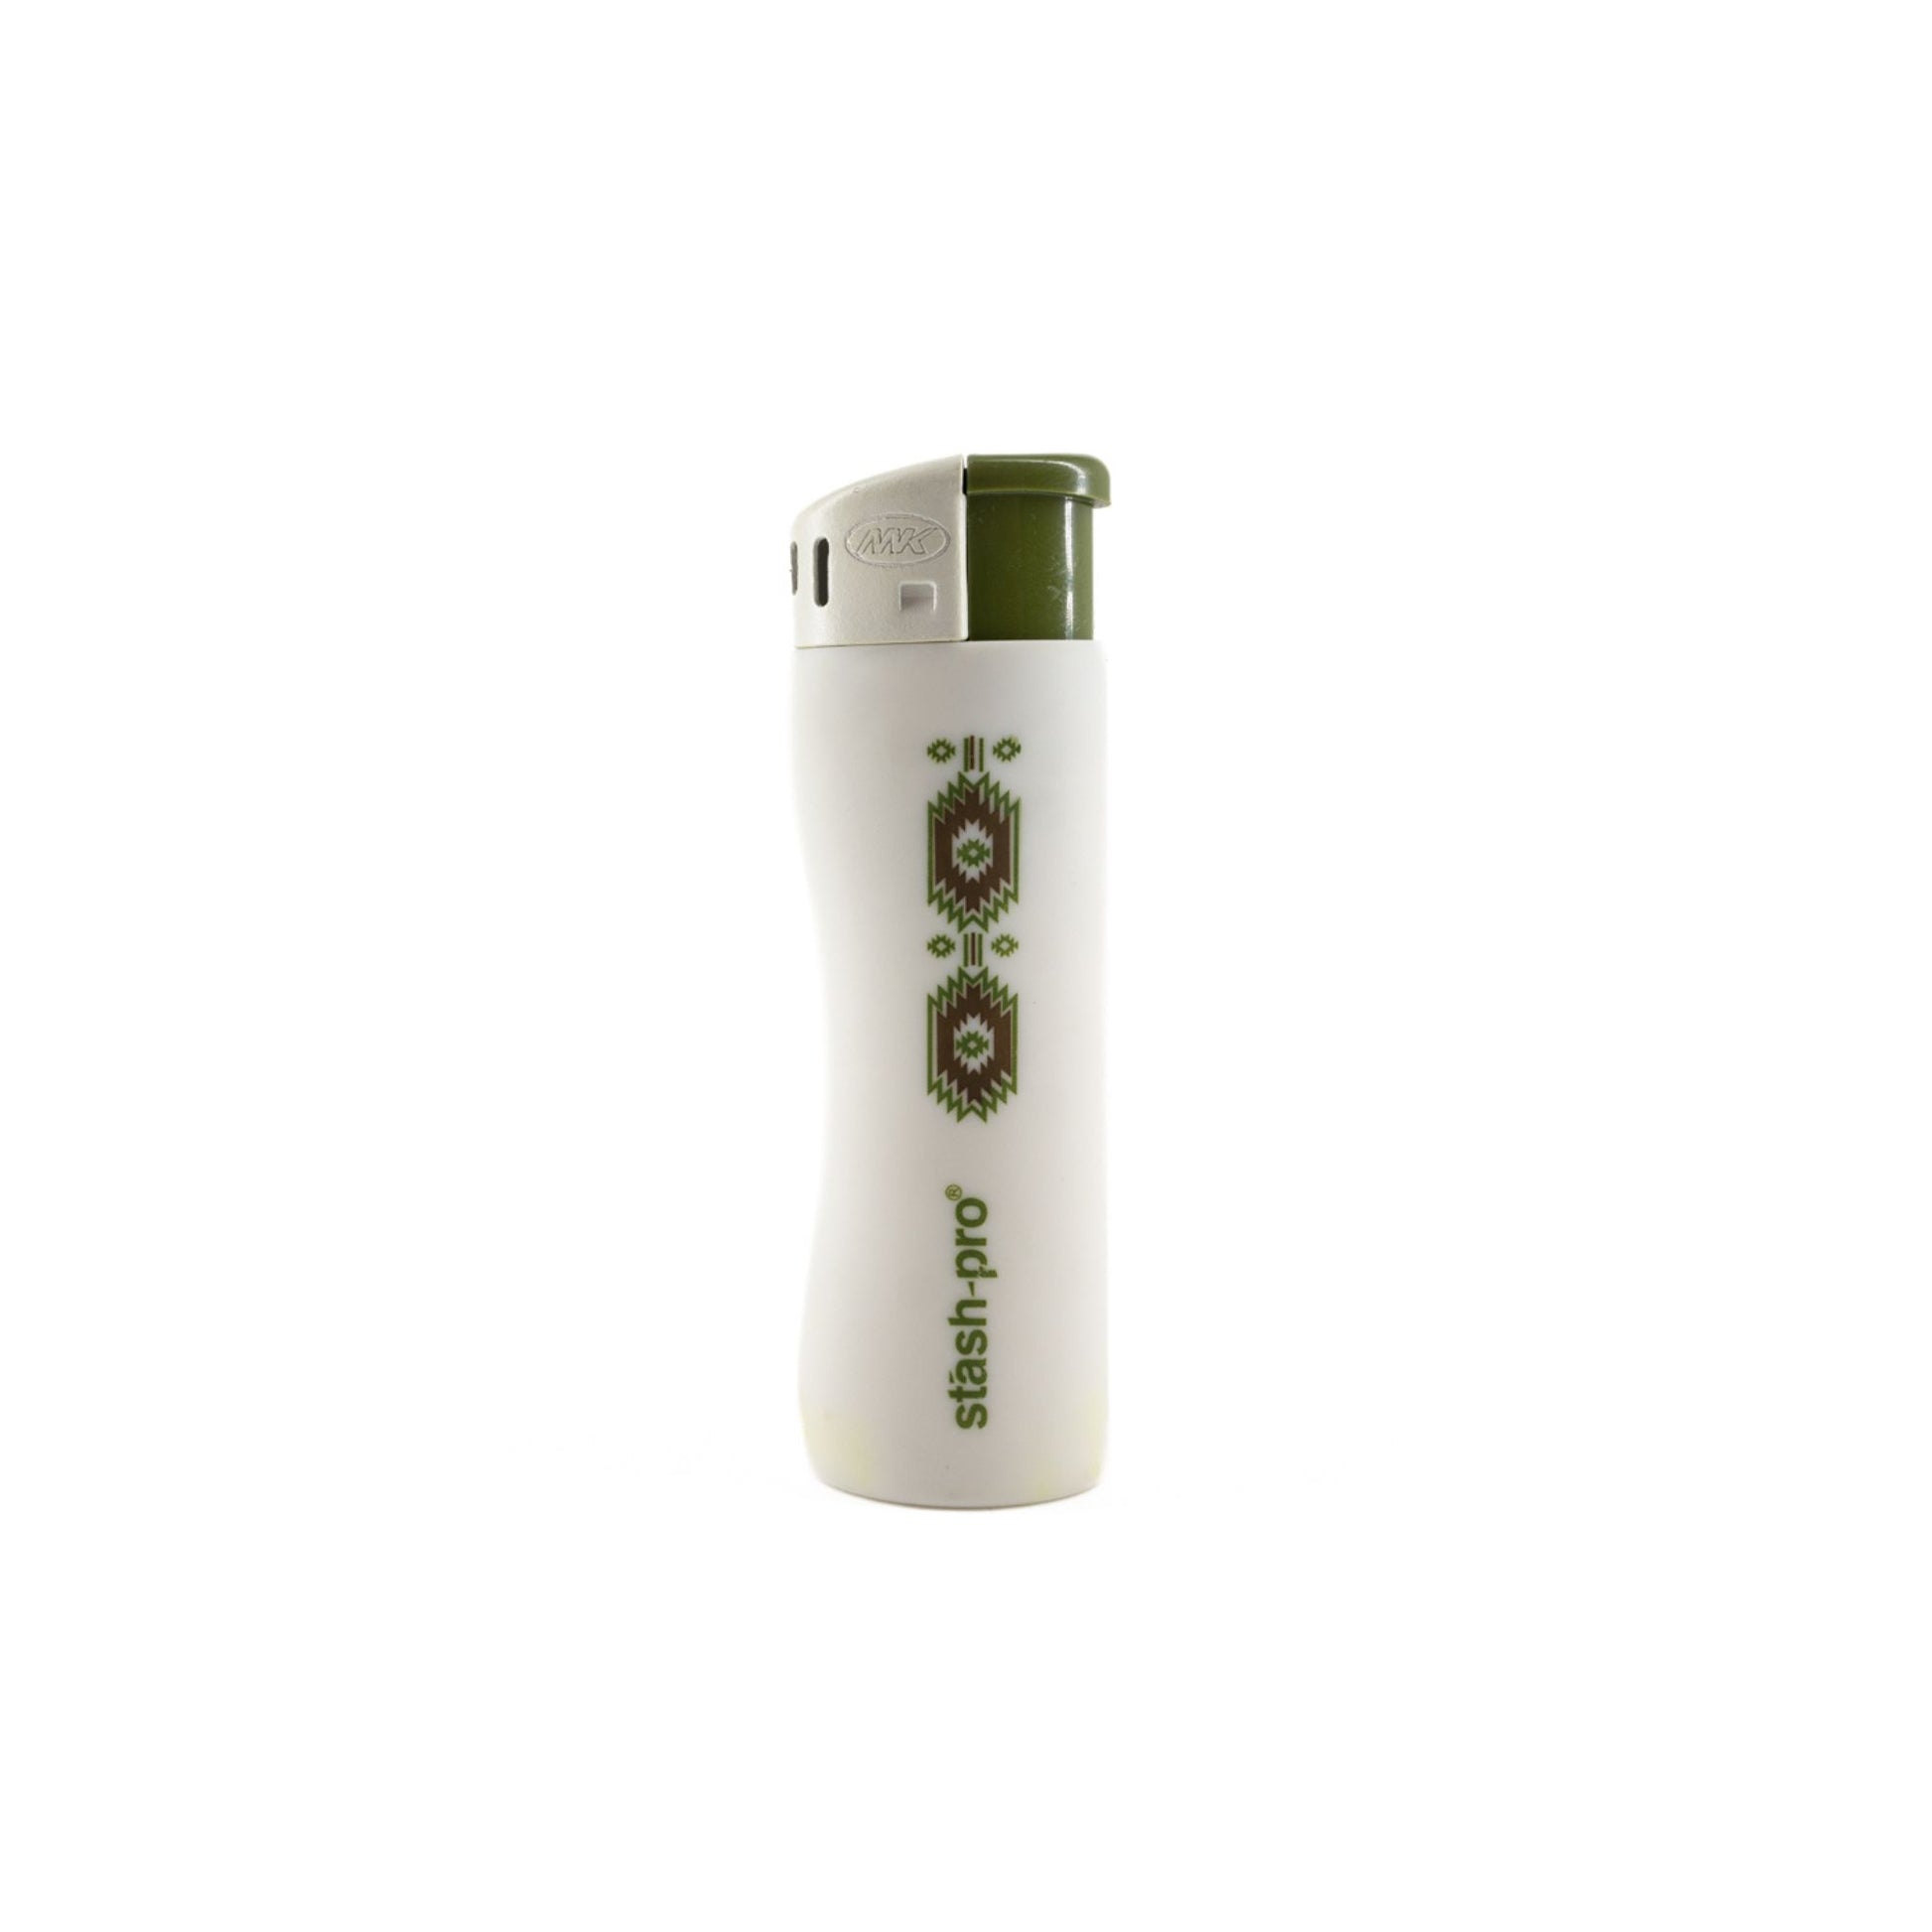 Stash-Pro Pocket Lighter White